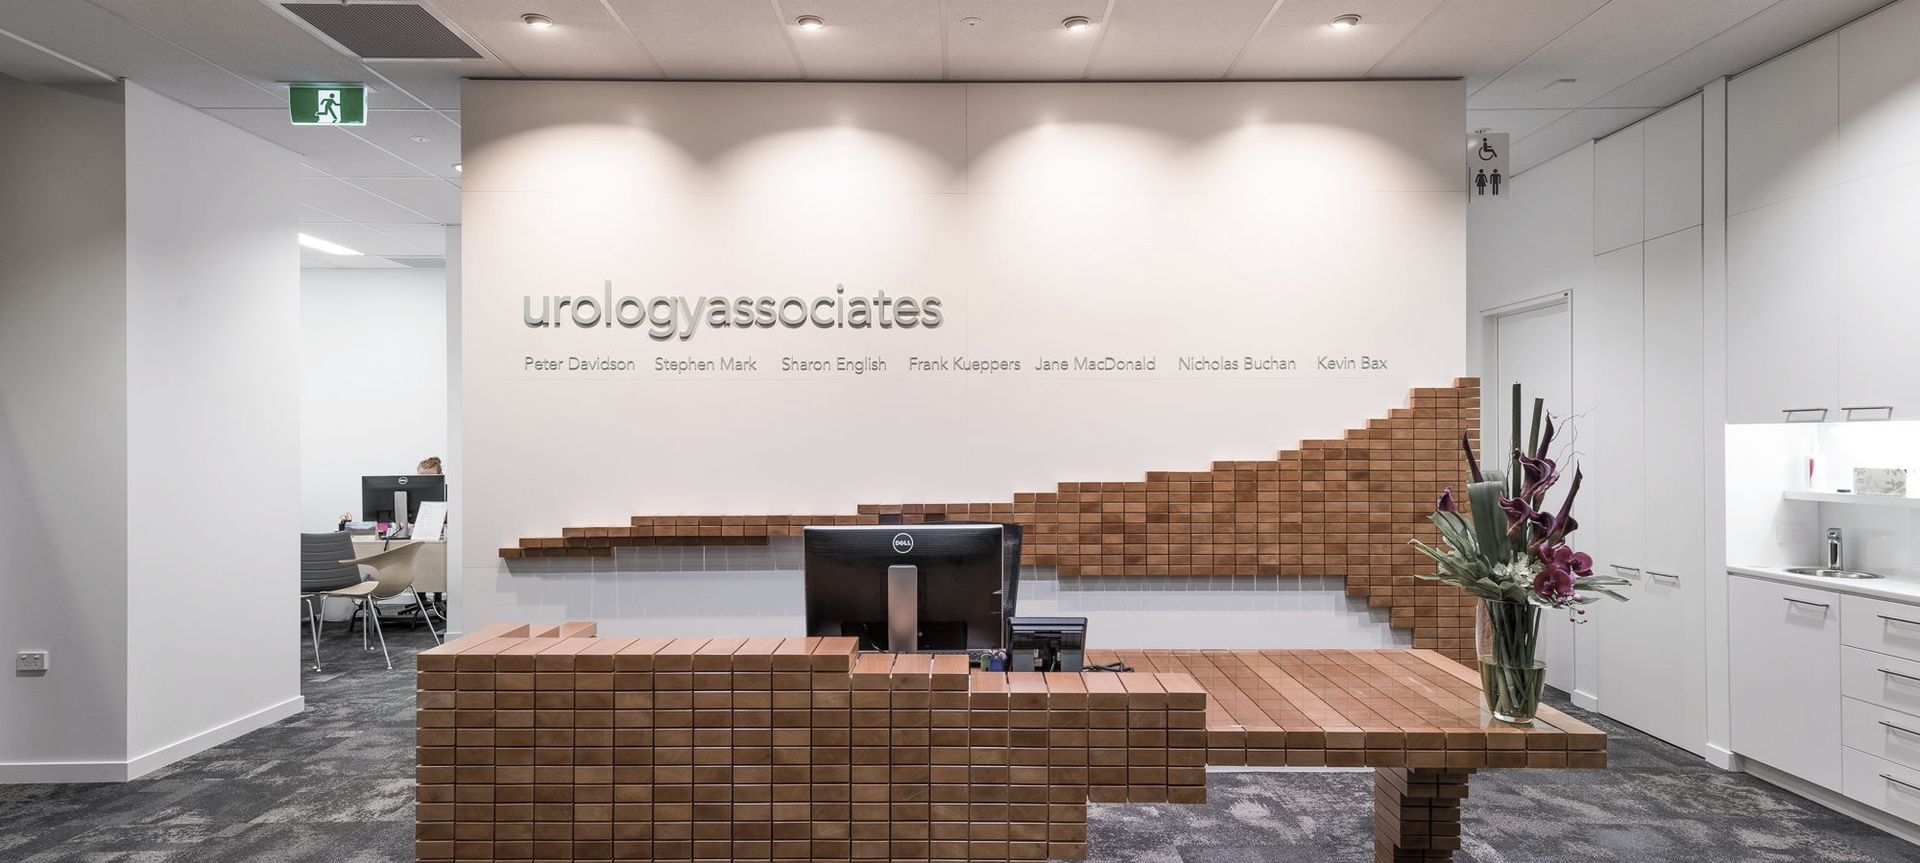 Urology Associates banner